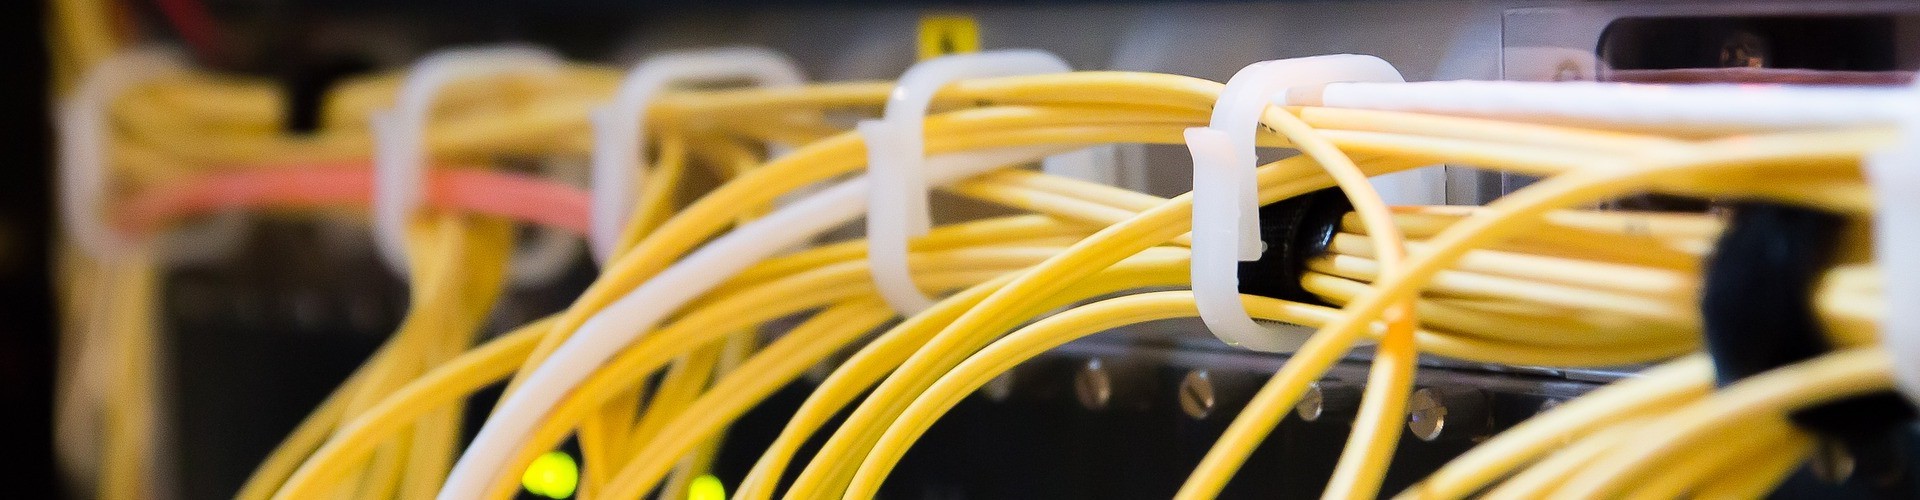 Viele gelbe Kabel führen in einen Computer oder Server.